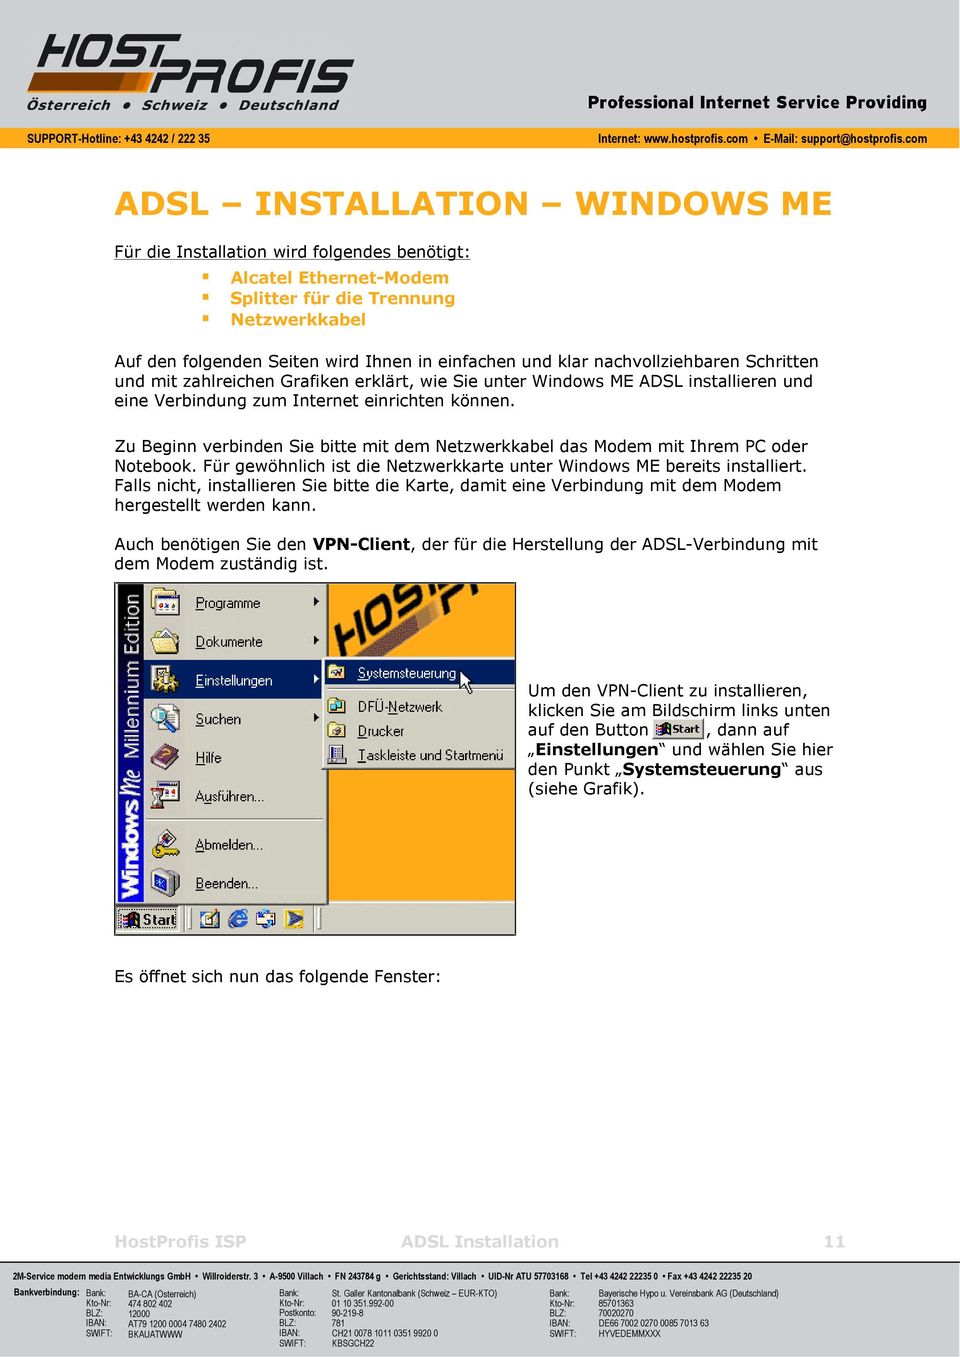 Zu Beginn verbinden Sie bitte mit dem Netzwerkkabel das Modem mit Ihrem PC oder Notebook. Für gewöhnlich ist die Netzwerkkarte unter Windows ME bereits installiert.